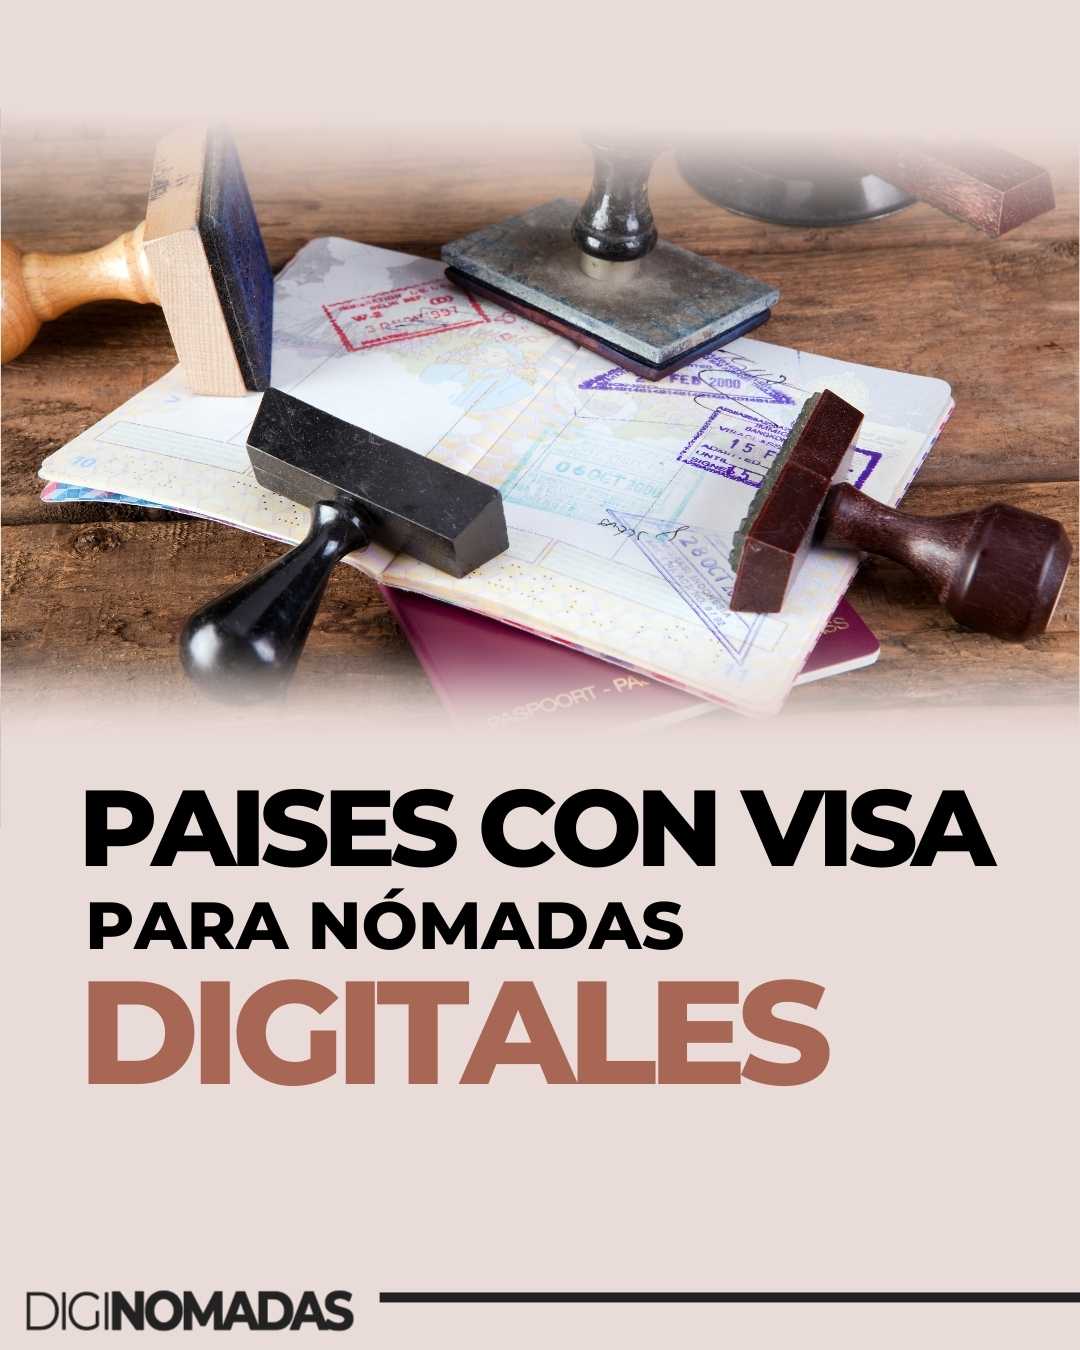 Países con visa para nómadas digitales - Teletrabajo y trabajo remoto